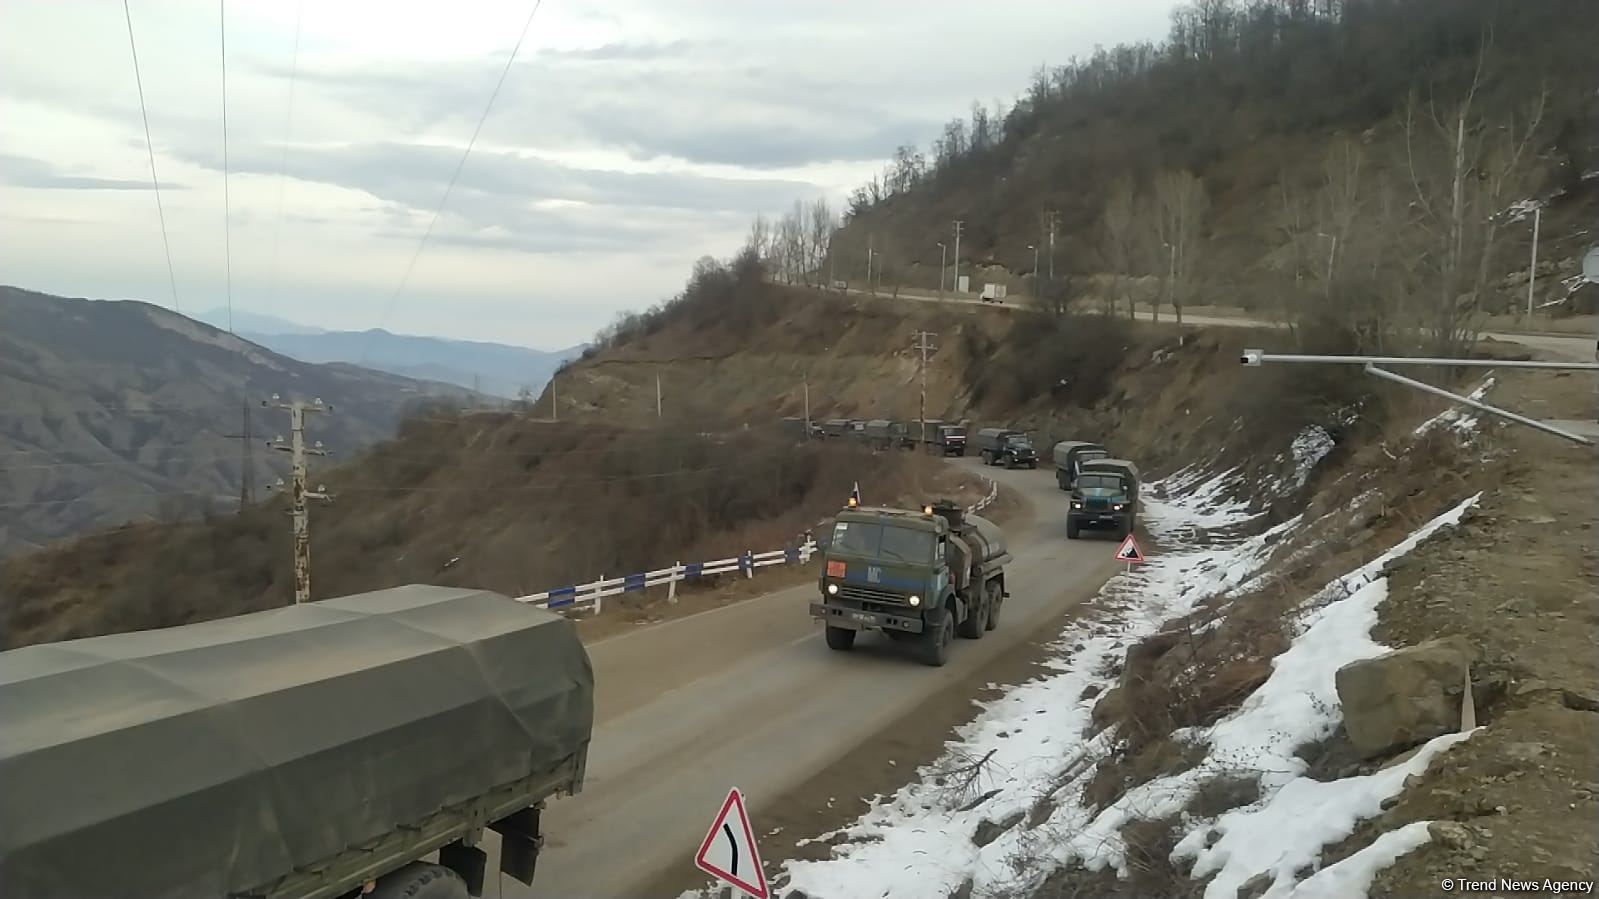 По Лачинской дороге беспрепятственно проехали еще 15 транспортных средств миротворцев (ФОТО)